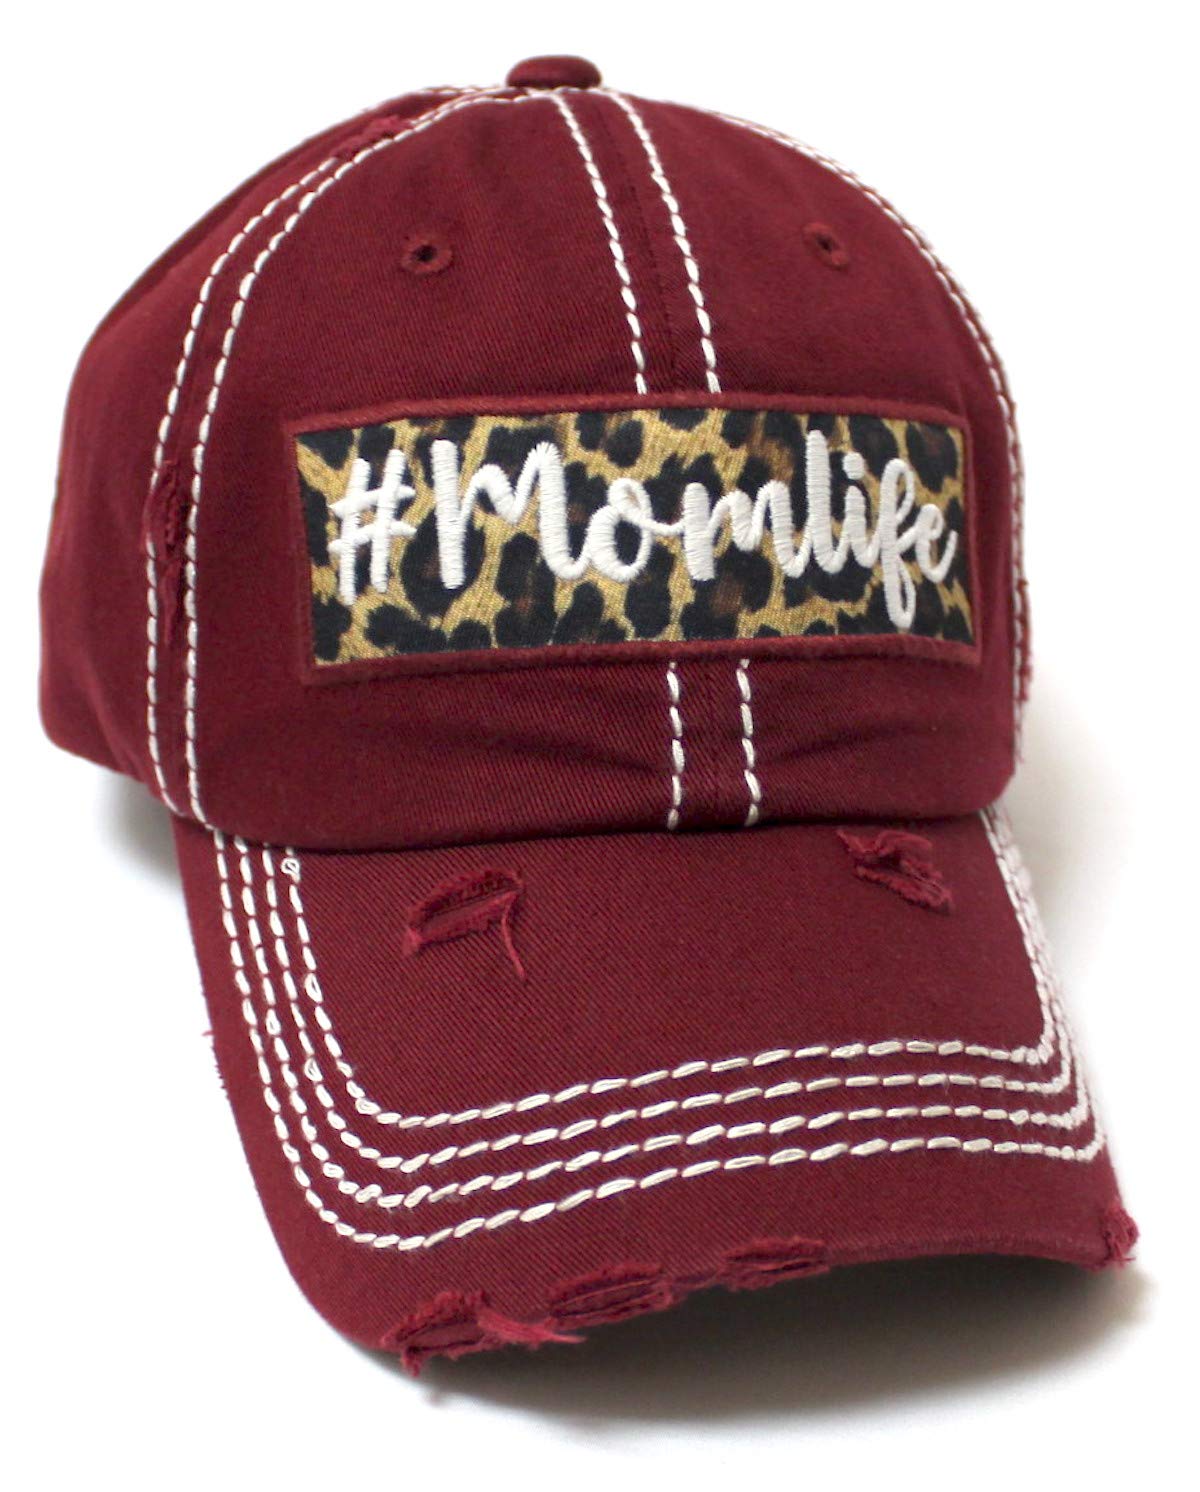 CAPS 'N VINTAGE Women's Distressed Cap # Momlife Leopard Print Patch Embroidery Monogram Hat, Wine Burgundy - Caps 'N Vintage 